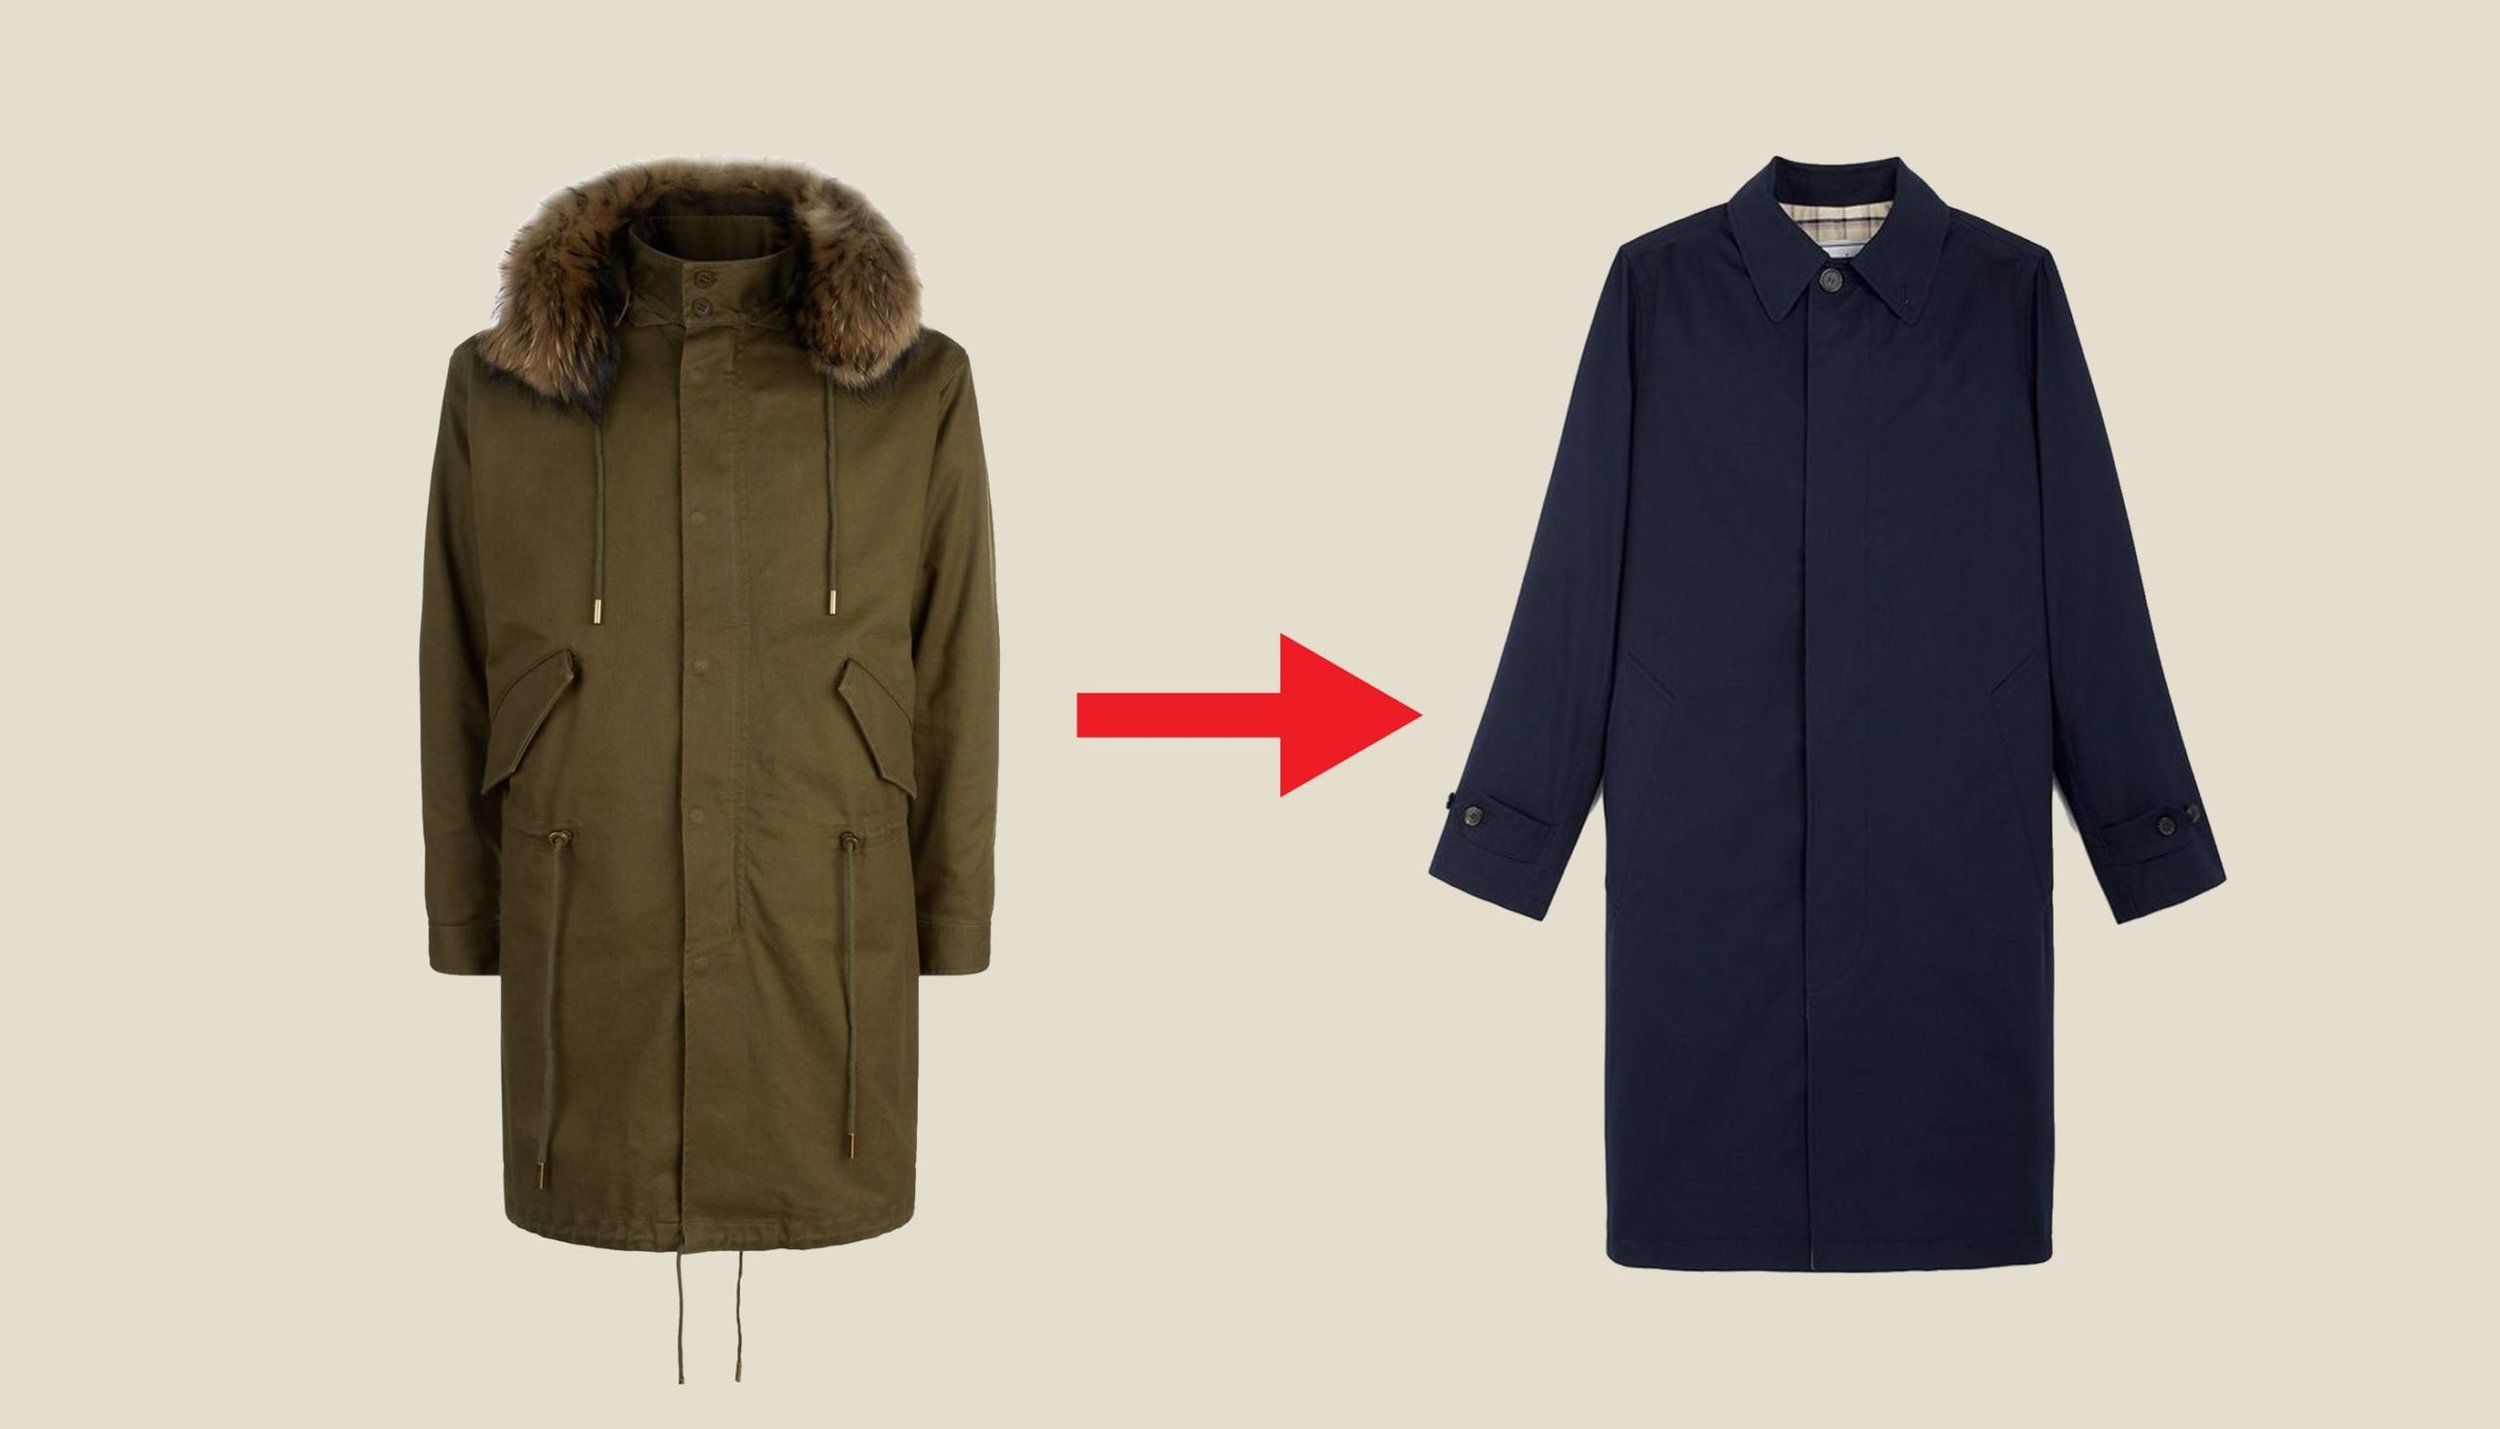 Parka coat vs mac coat